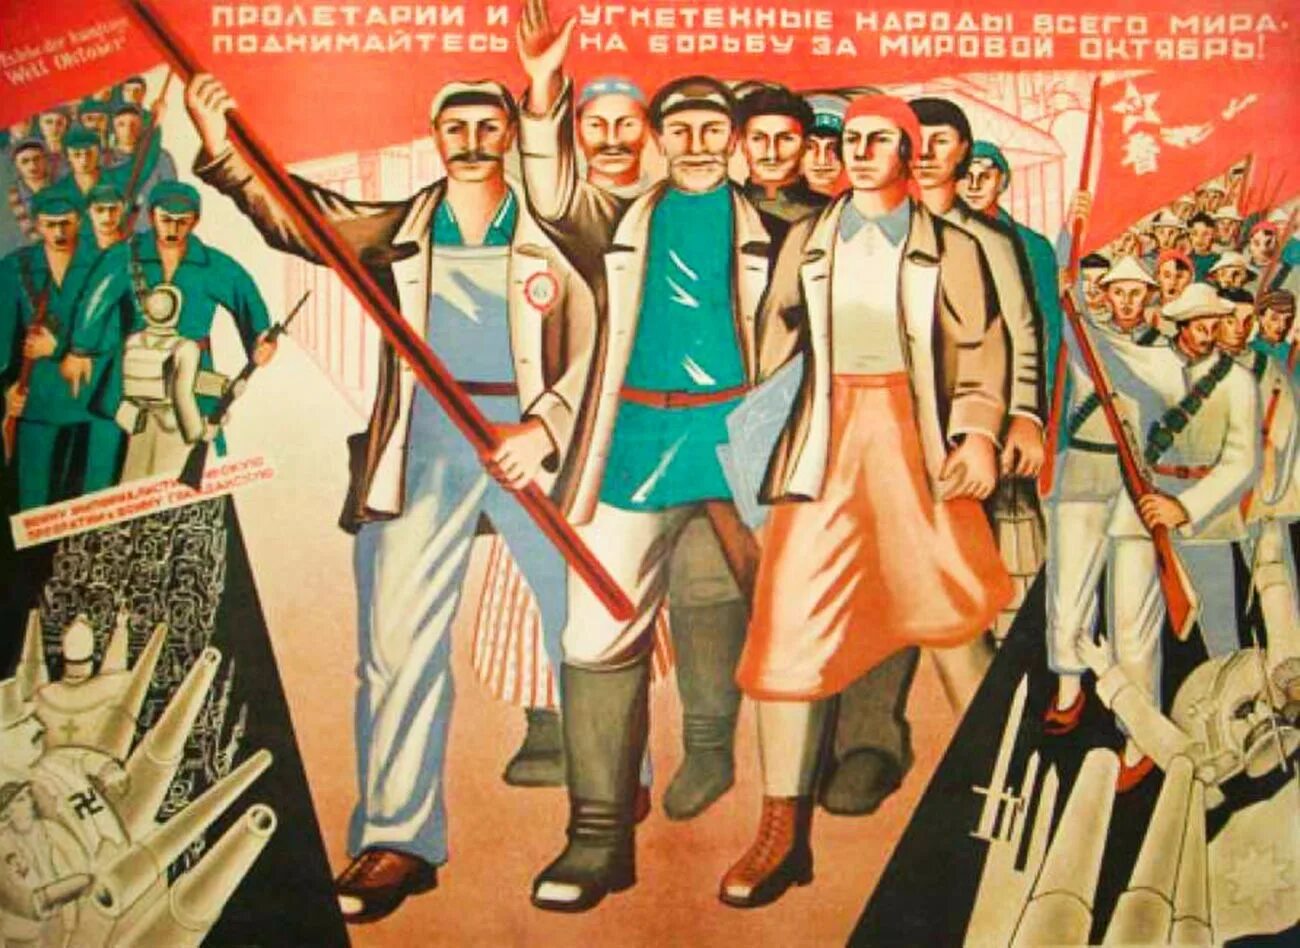 Рабочий класс в советском обществе. Плакаты Всемирная Октябрьская Социалистическая революция. Советские революционные плакаты. Агитационные плакаты 1920 х годов. Пролетариат плакаты.